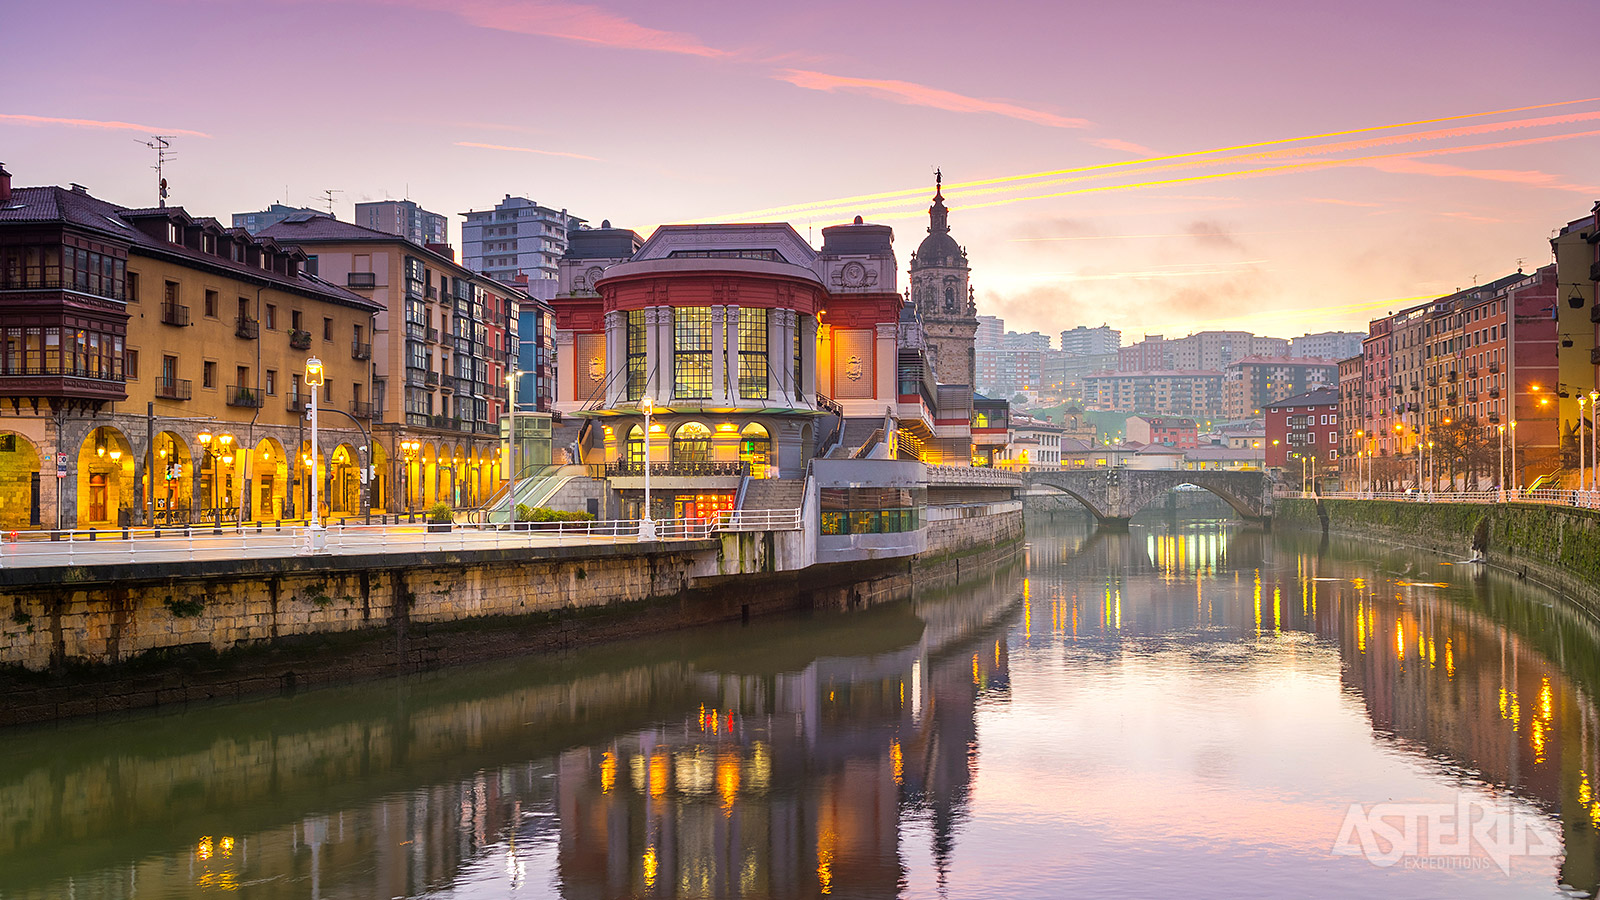 Mercado de la Ribera in Bilbao is één van de grootste overdekte markten van Europa